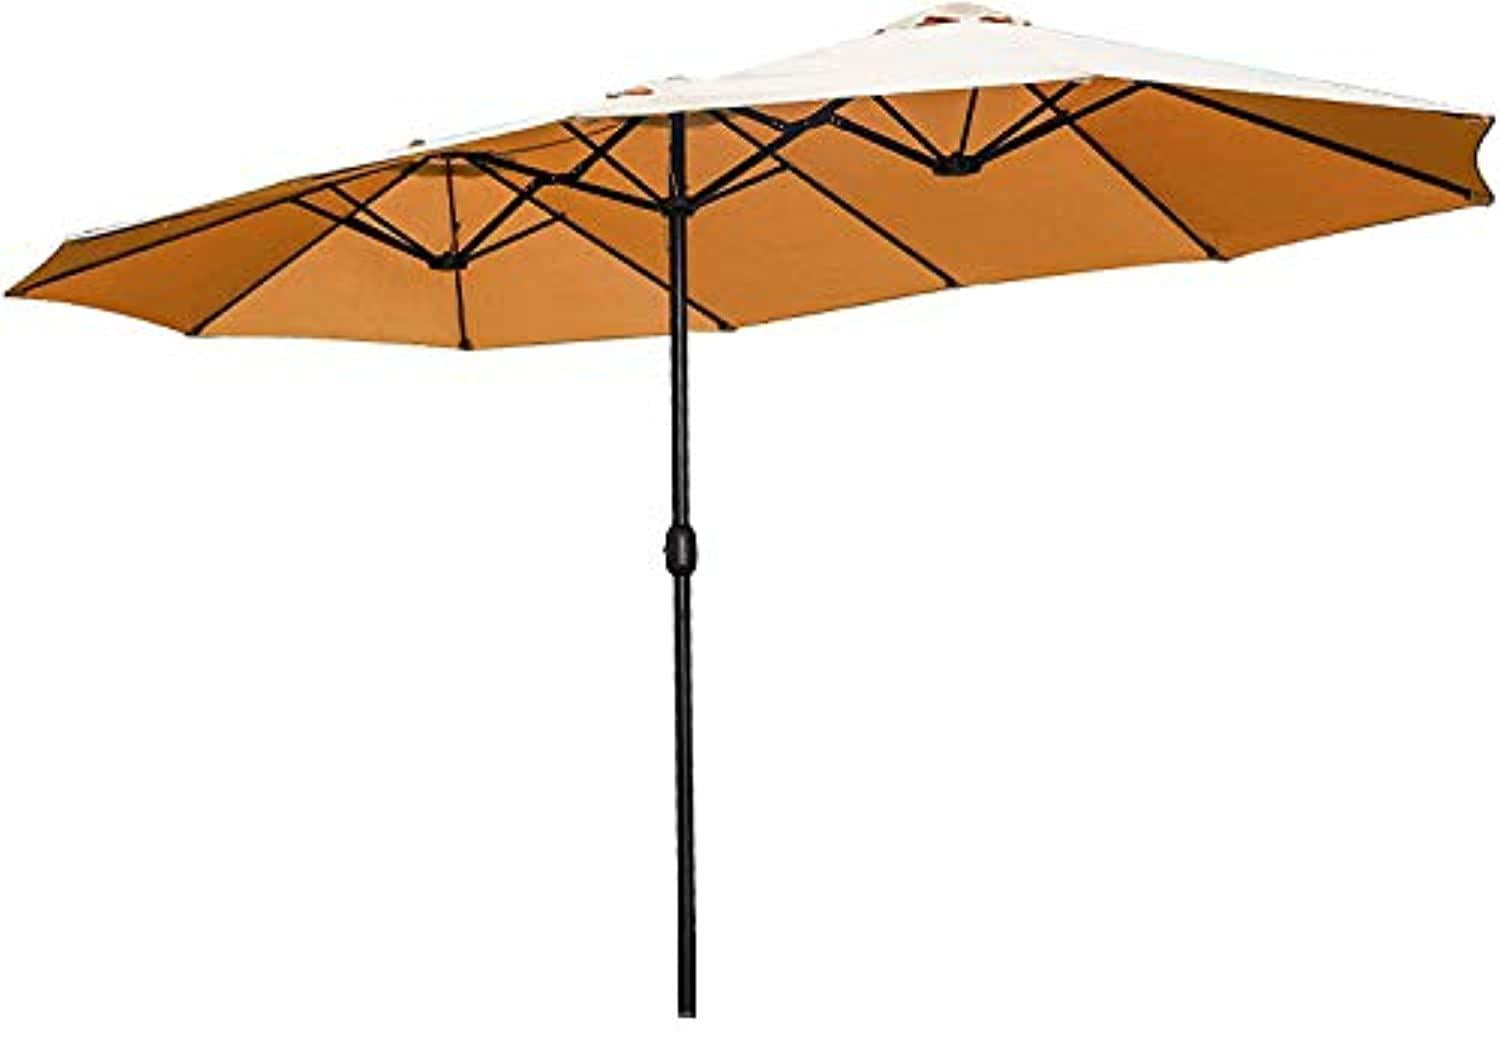 15' Patio Outdoor Umbrella Solar LED Light Crank Sun Shade Garden Canopy Market 